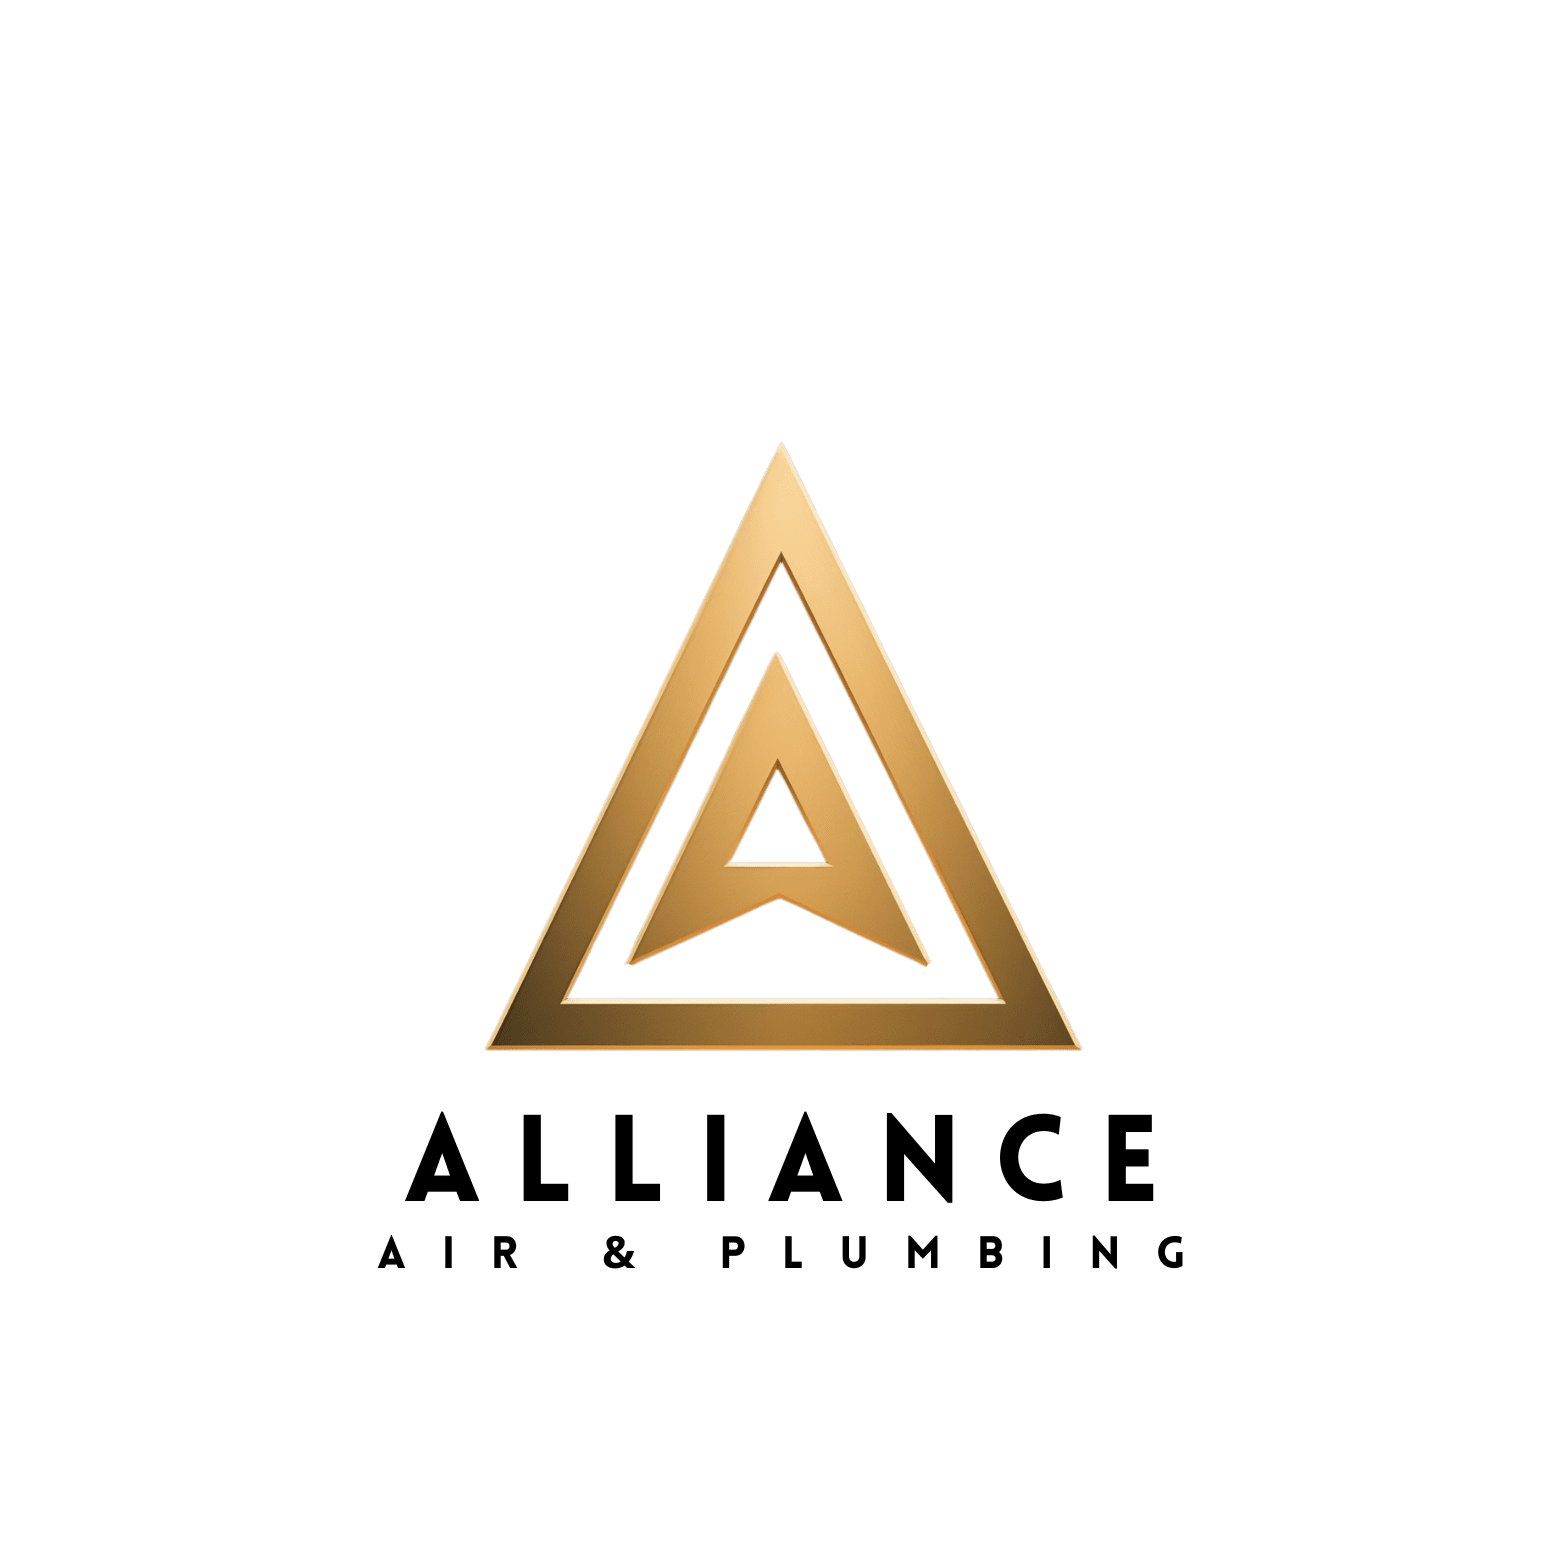 www.allianceairandplumbing.com